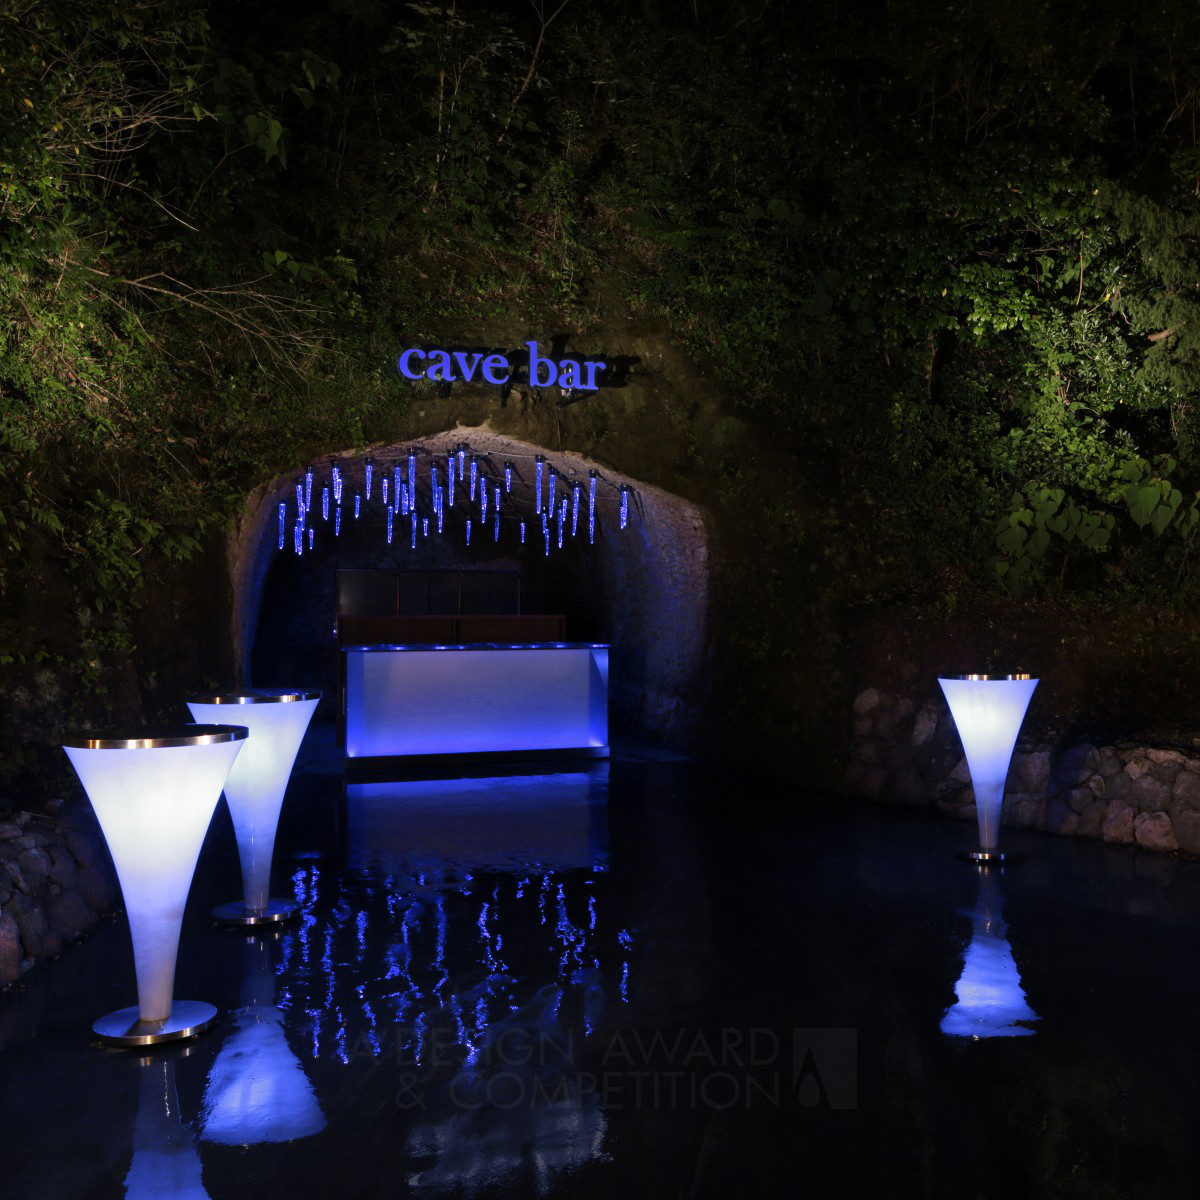 cave bar Hotel Facility For Guests by Akitoshi Imafuku